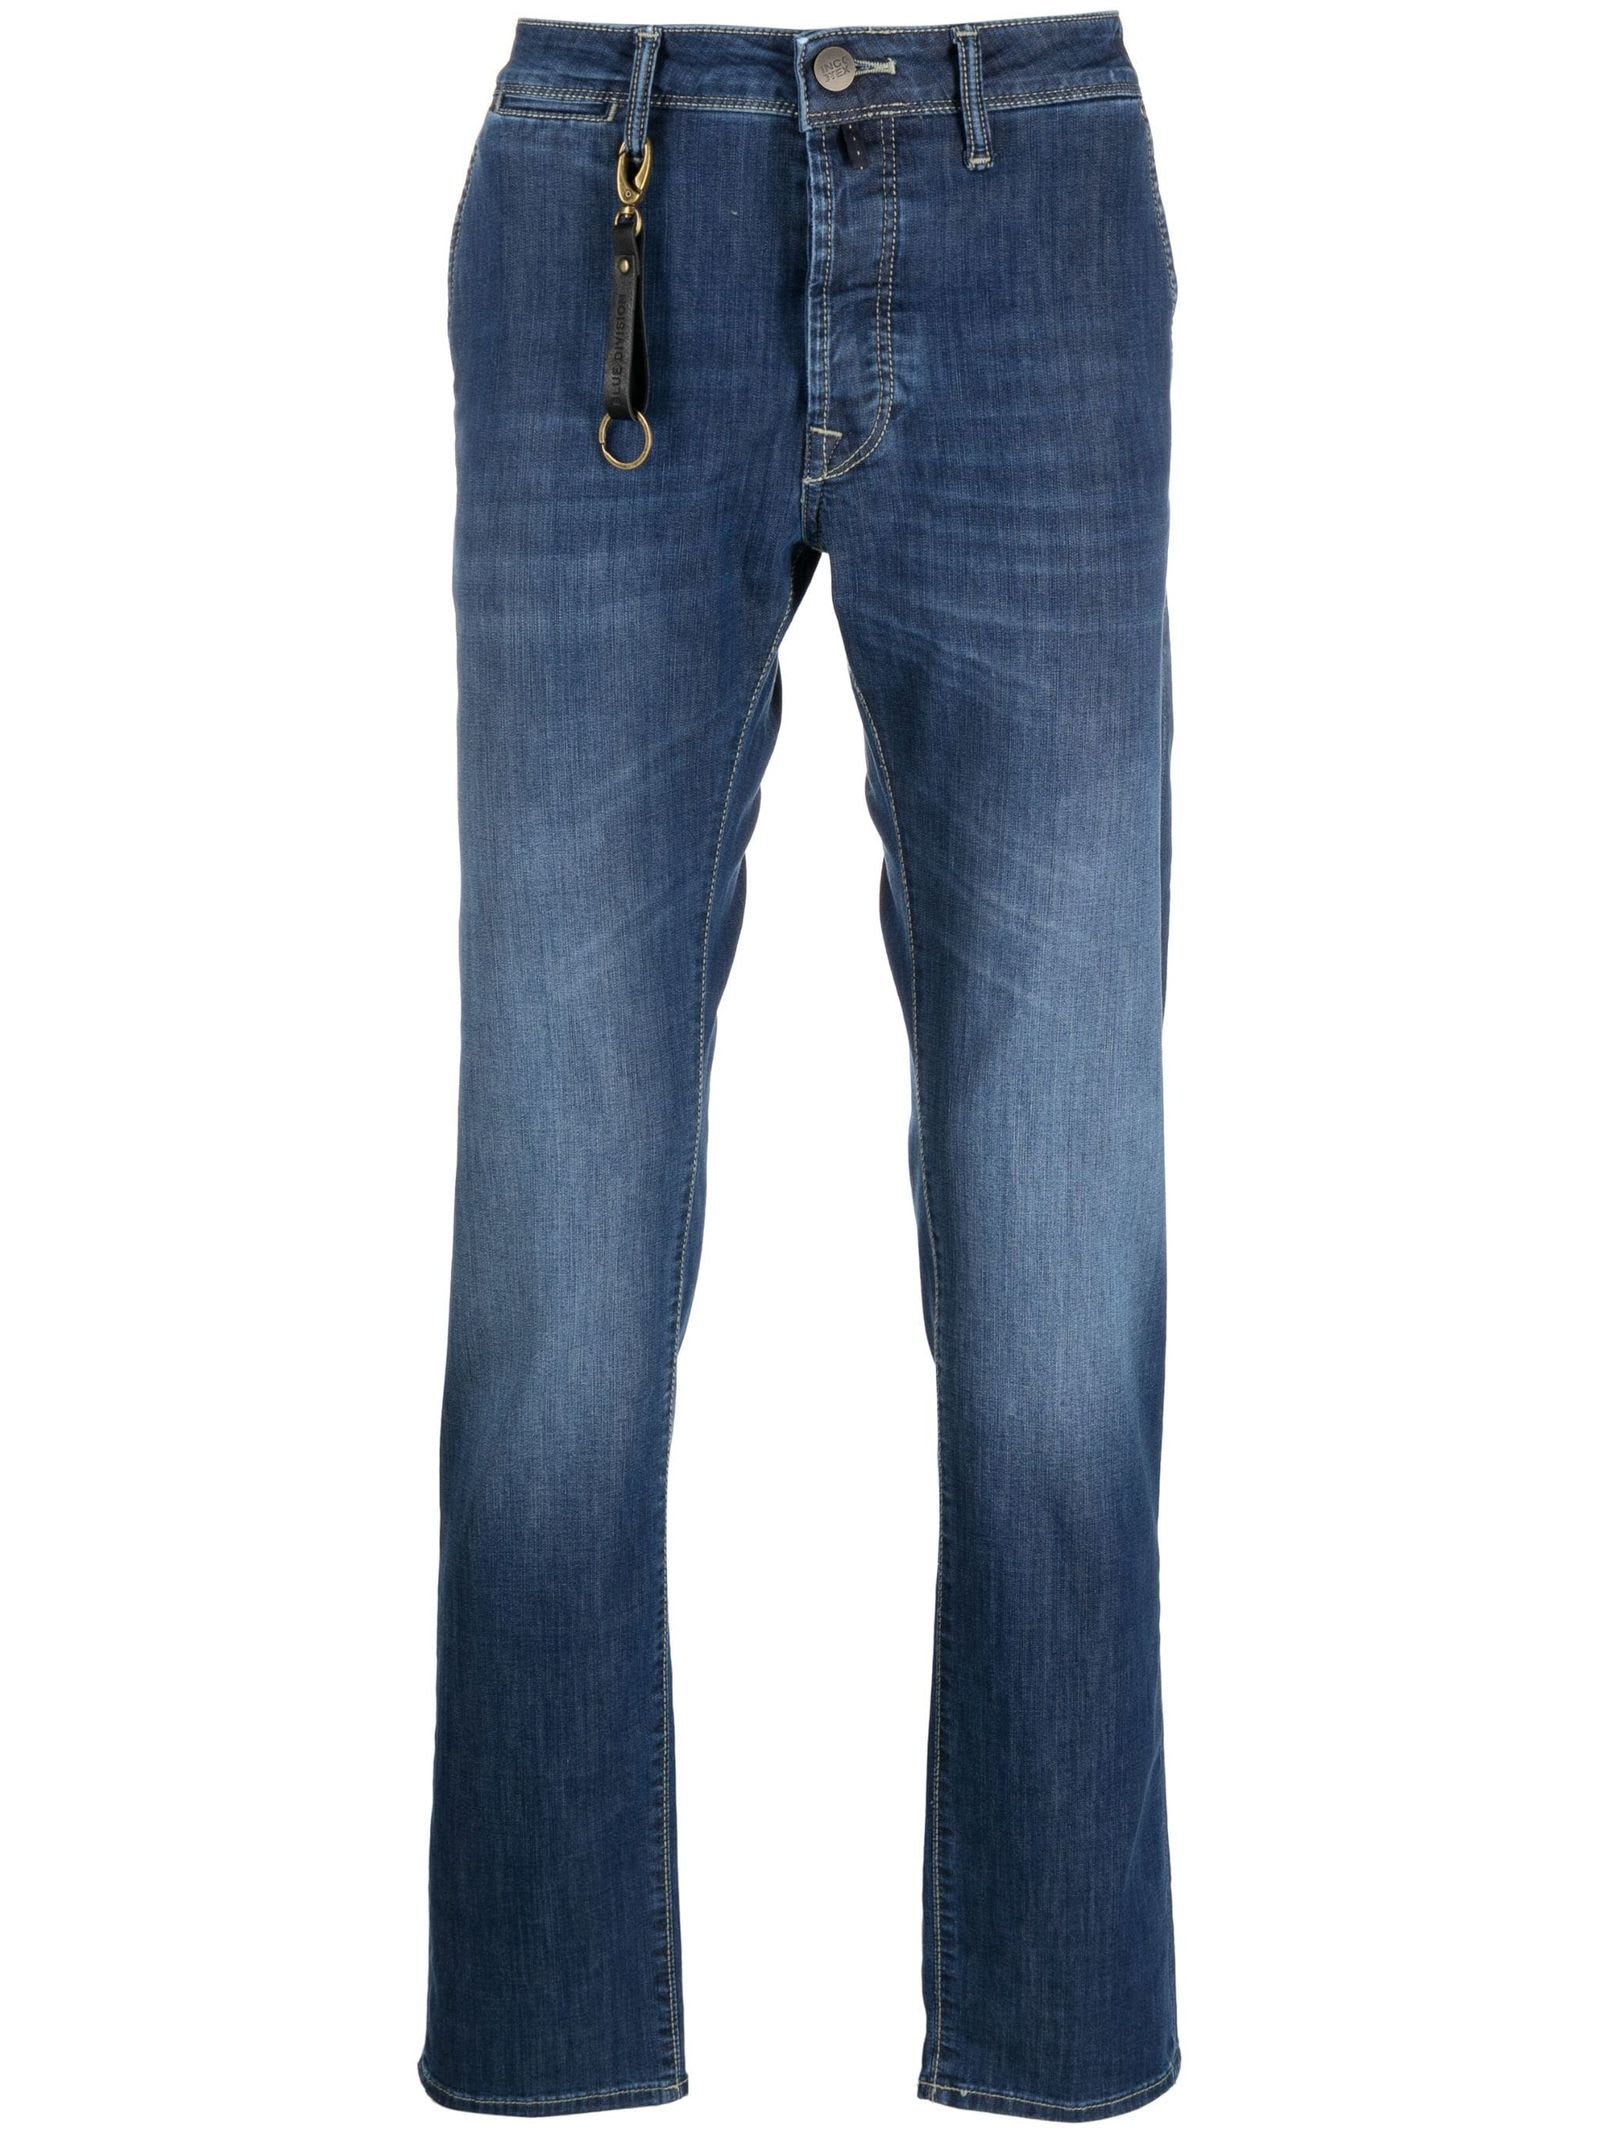 Shop Incotex Indigo Blue Cotton Blend Jeans